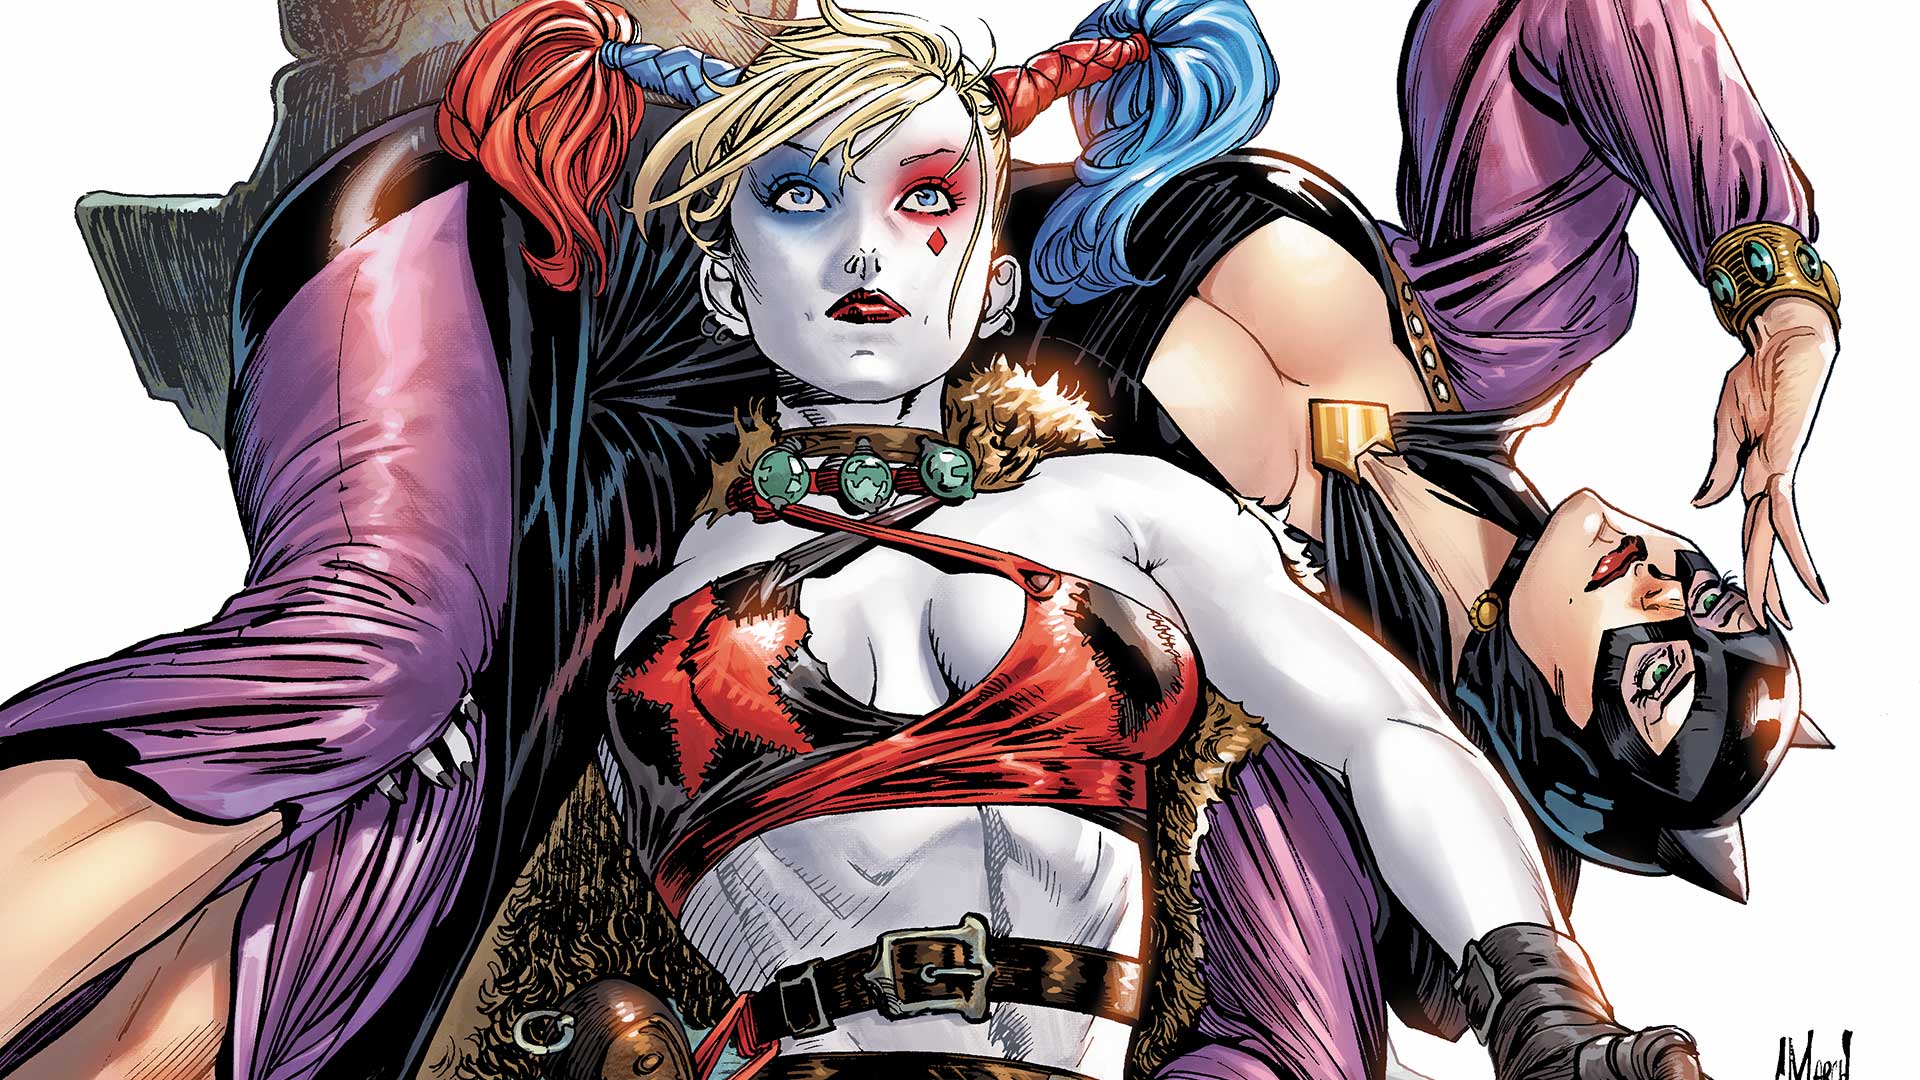 General 1920x1080 Harley Quinn Catwoman DC Comics superheroines superhero costumes women comics artwork fantasy art comic art